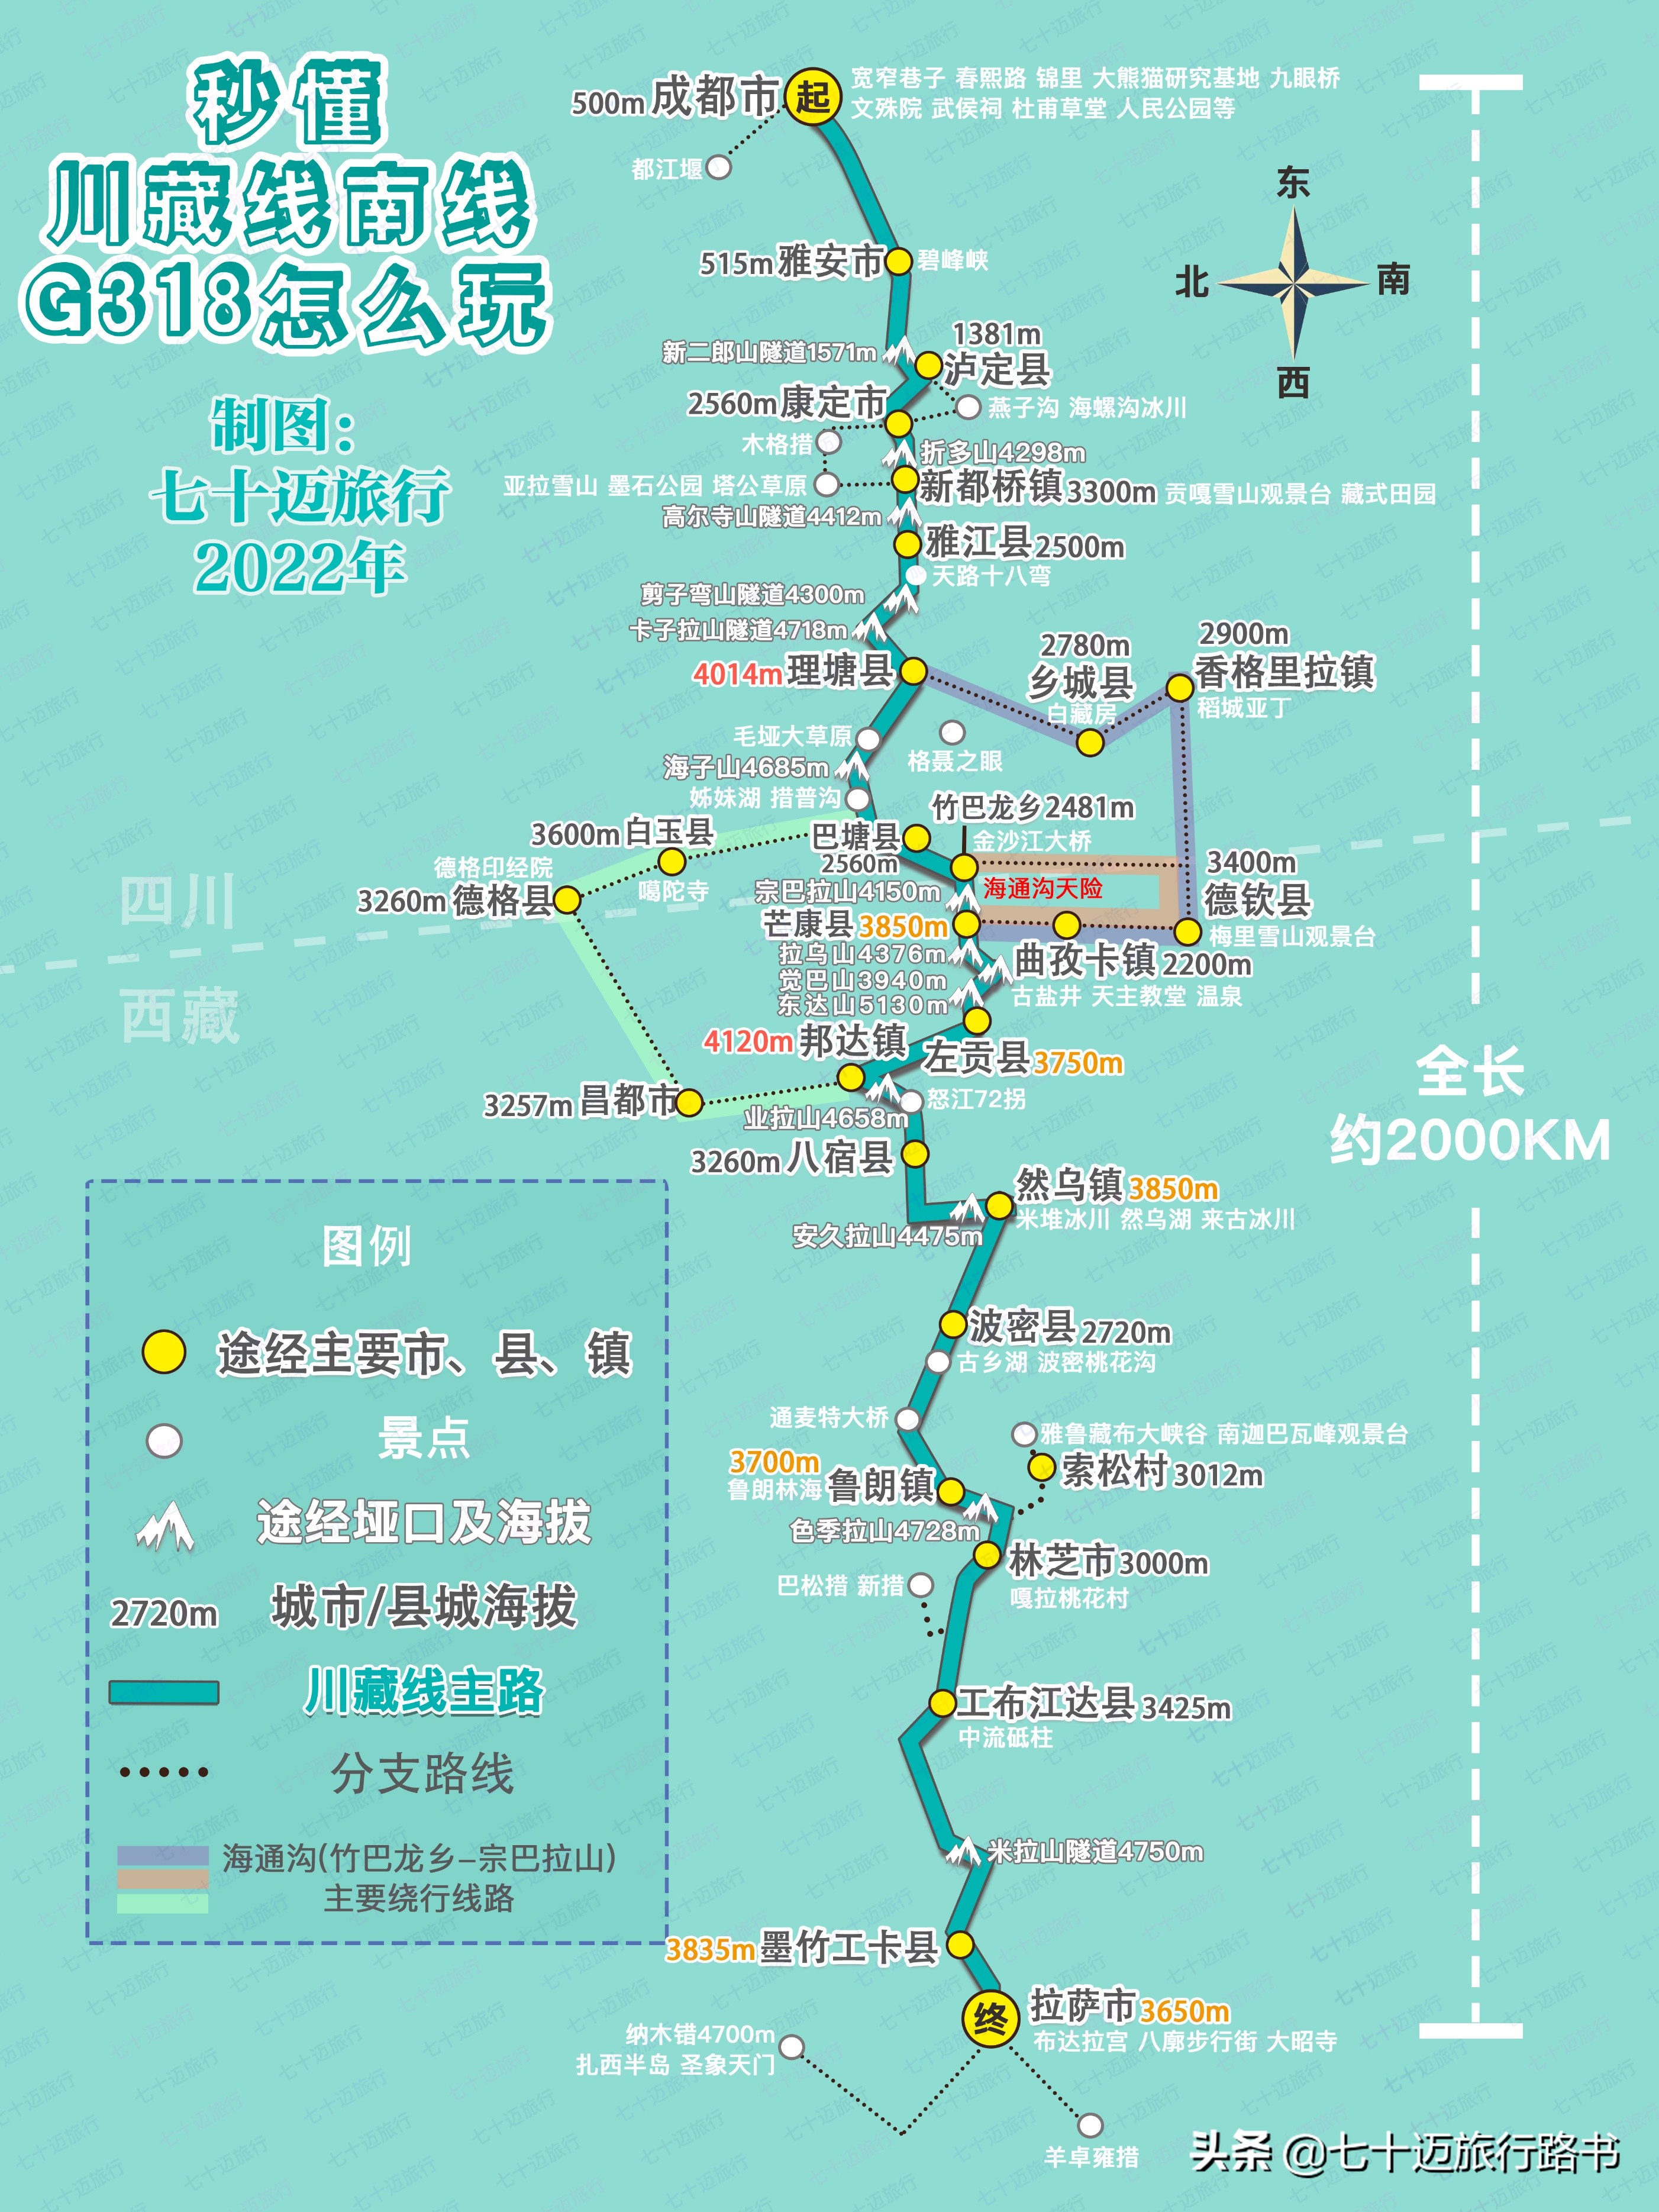 2022年最新「318川藏线」自驾游攻略及路书推荐 第2张